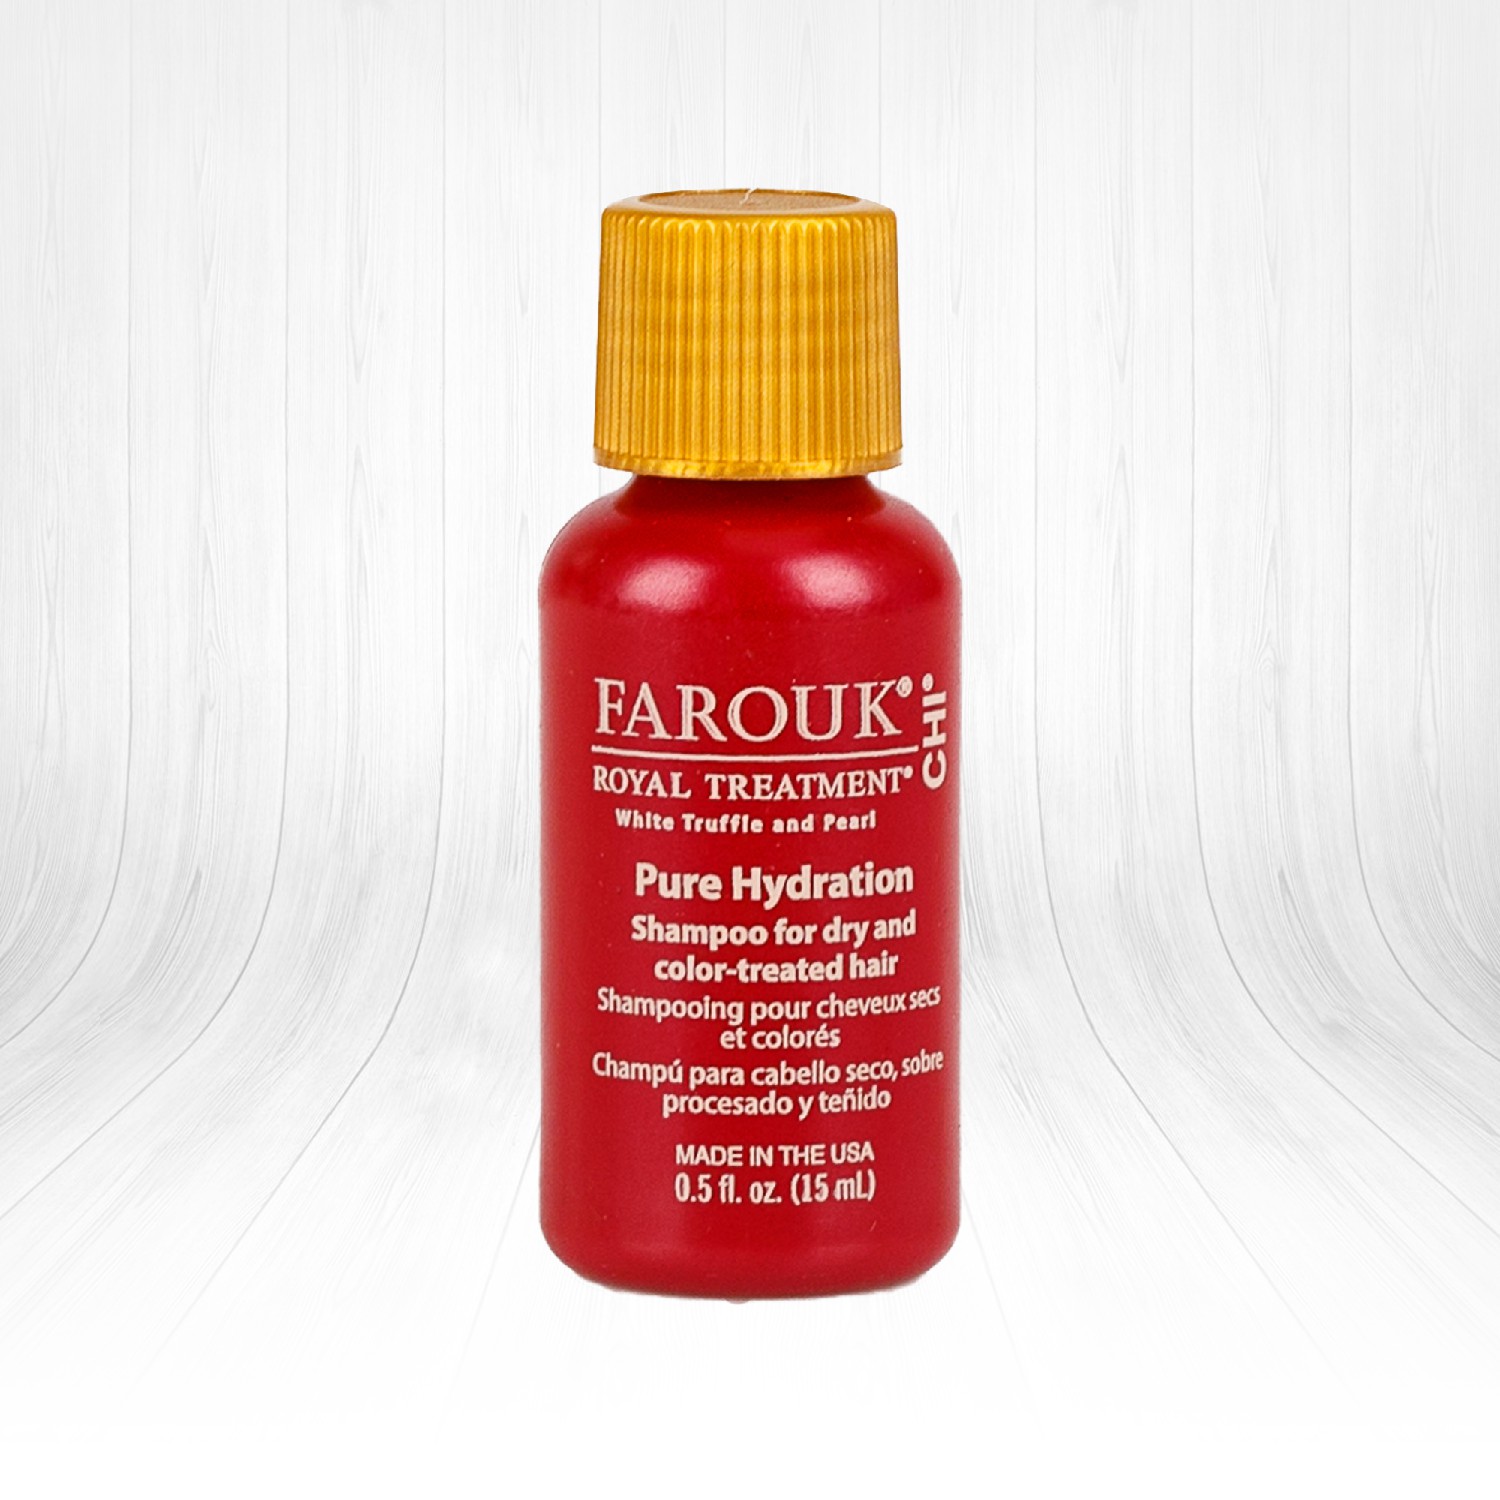 Farouk Royal Treatment by CHI Pure Hydration Shampoo Kuru Çok İşlem Görmüş ve Boyalı Saçlar için Şampuan